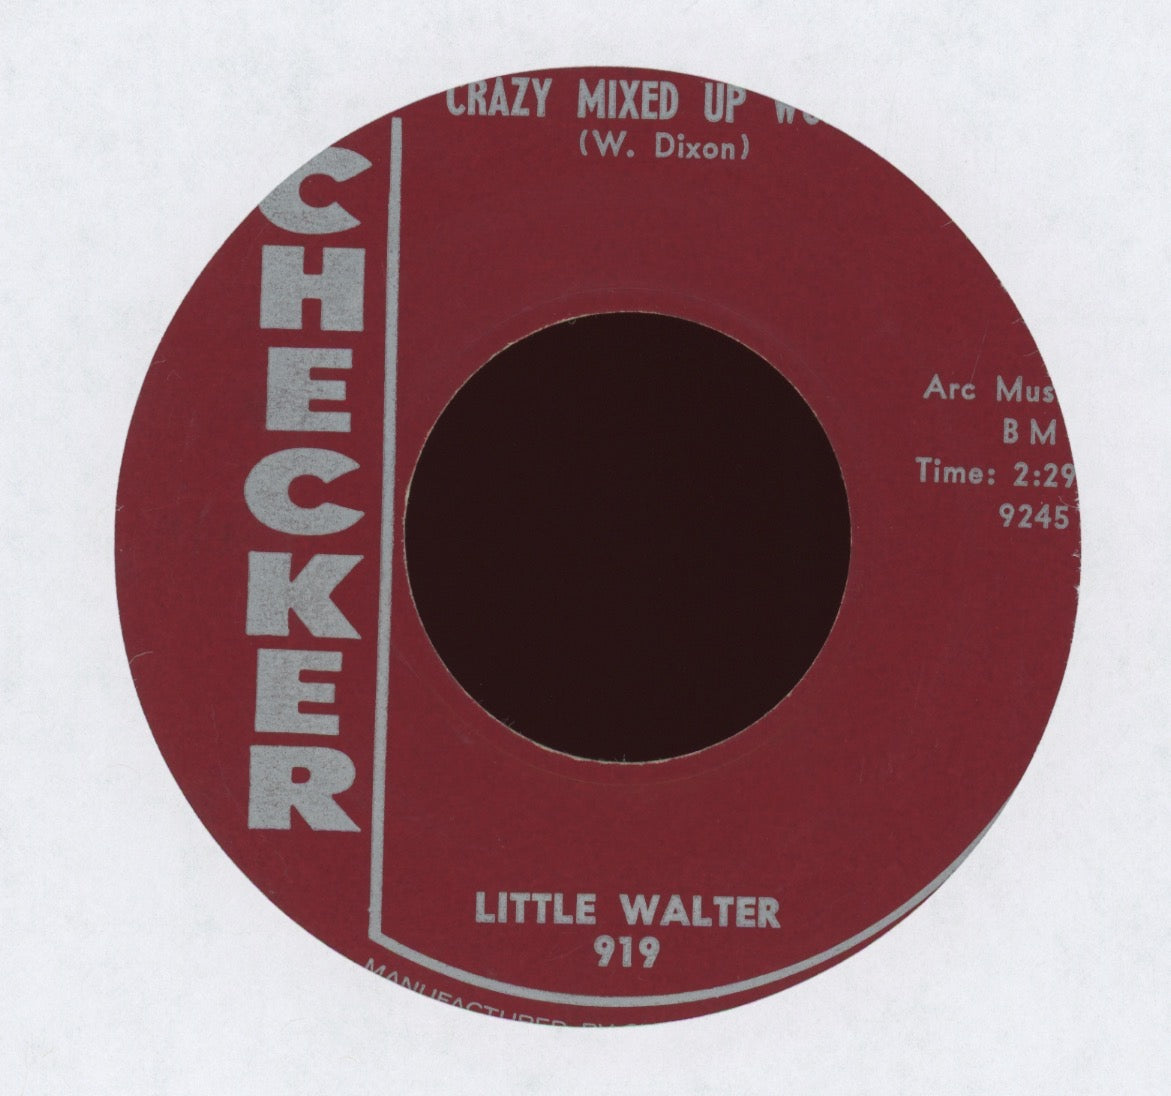 Little Walter - Crazy Mixed Up World on Checker R&B Rocker 45